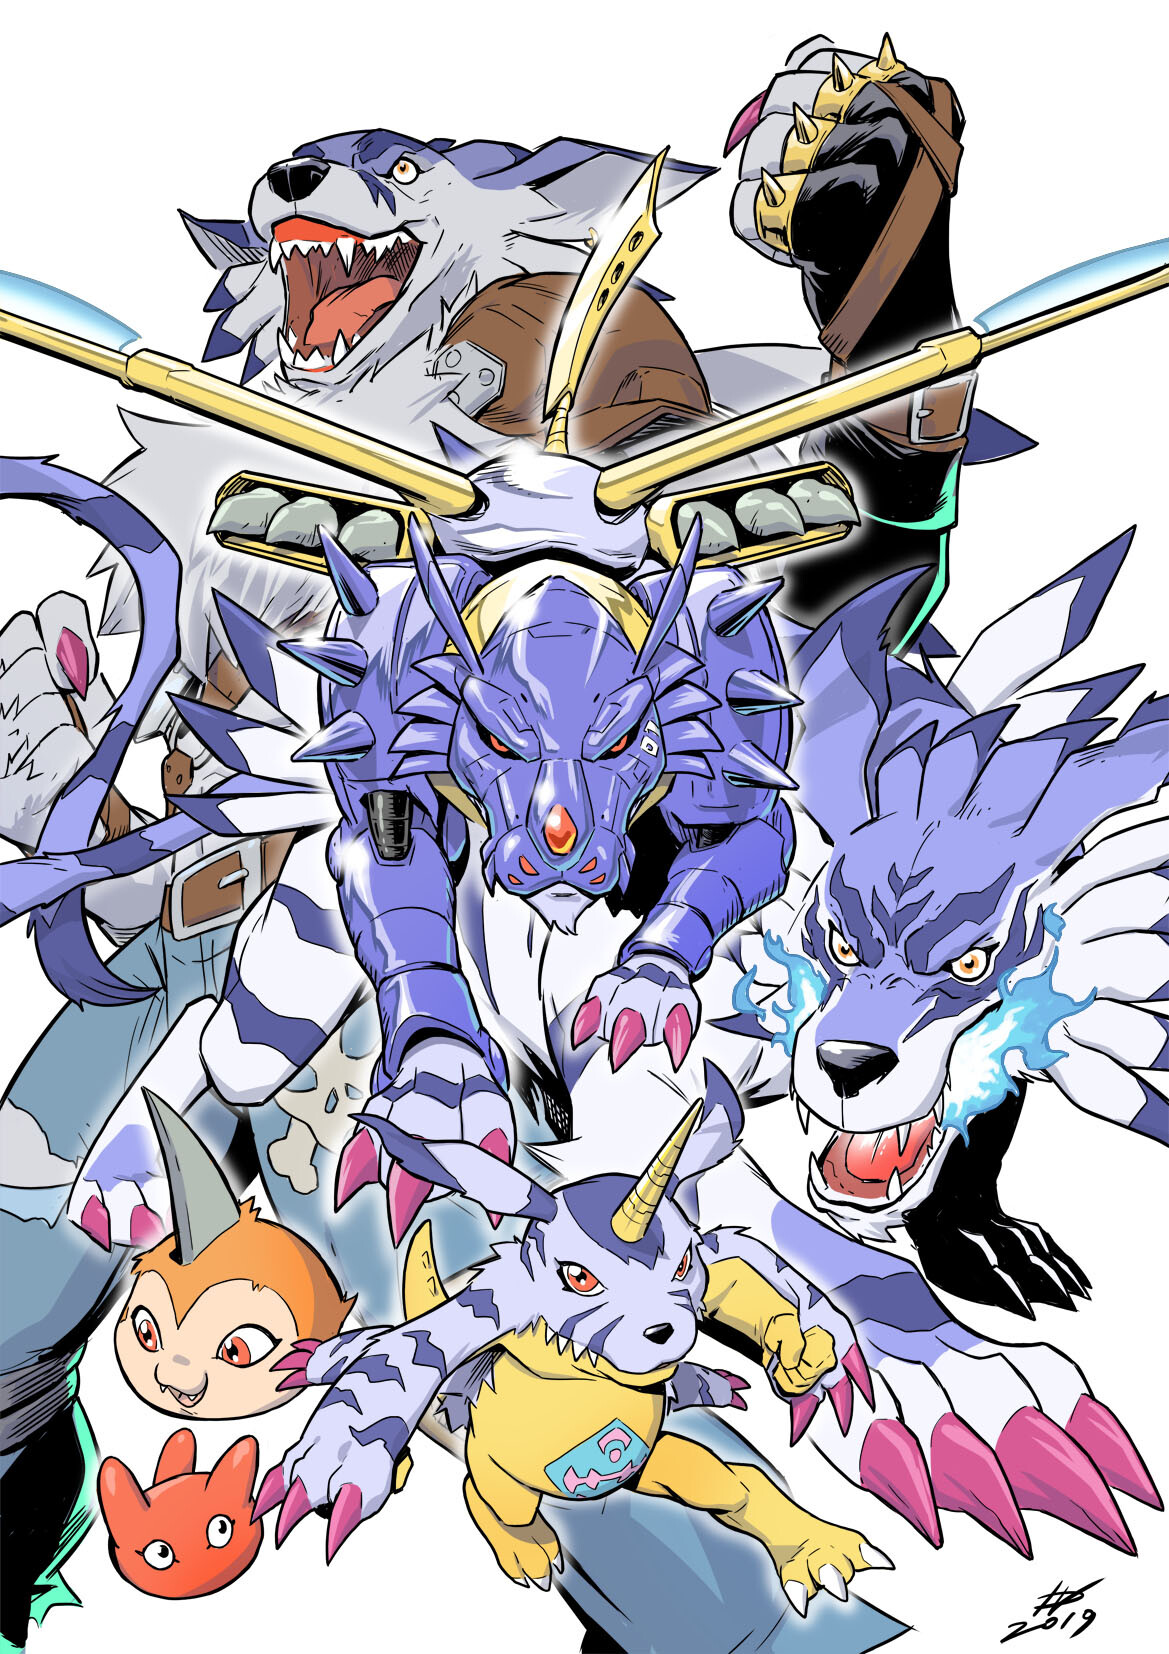 Anime 1169x1654 Digimon Digimon Adventure evolution Gabumon white background Ivan Fiorelli anime